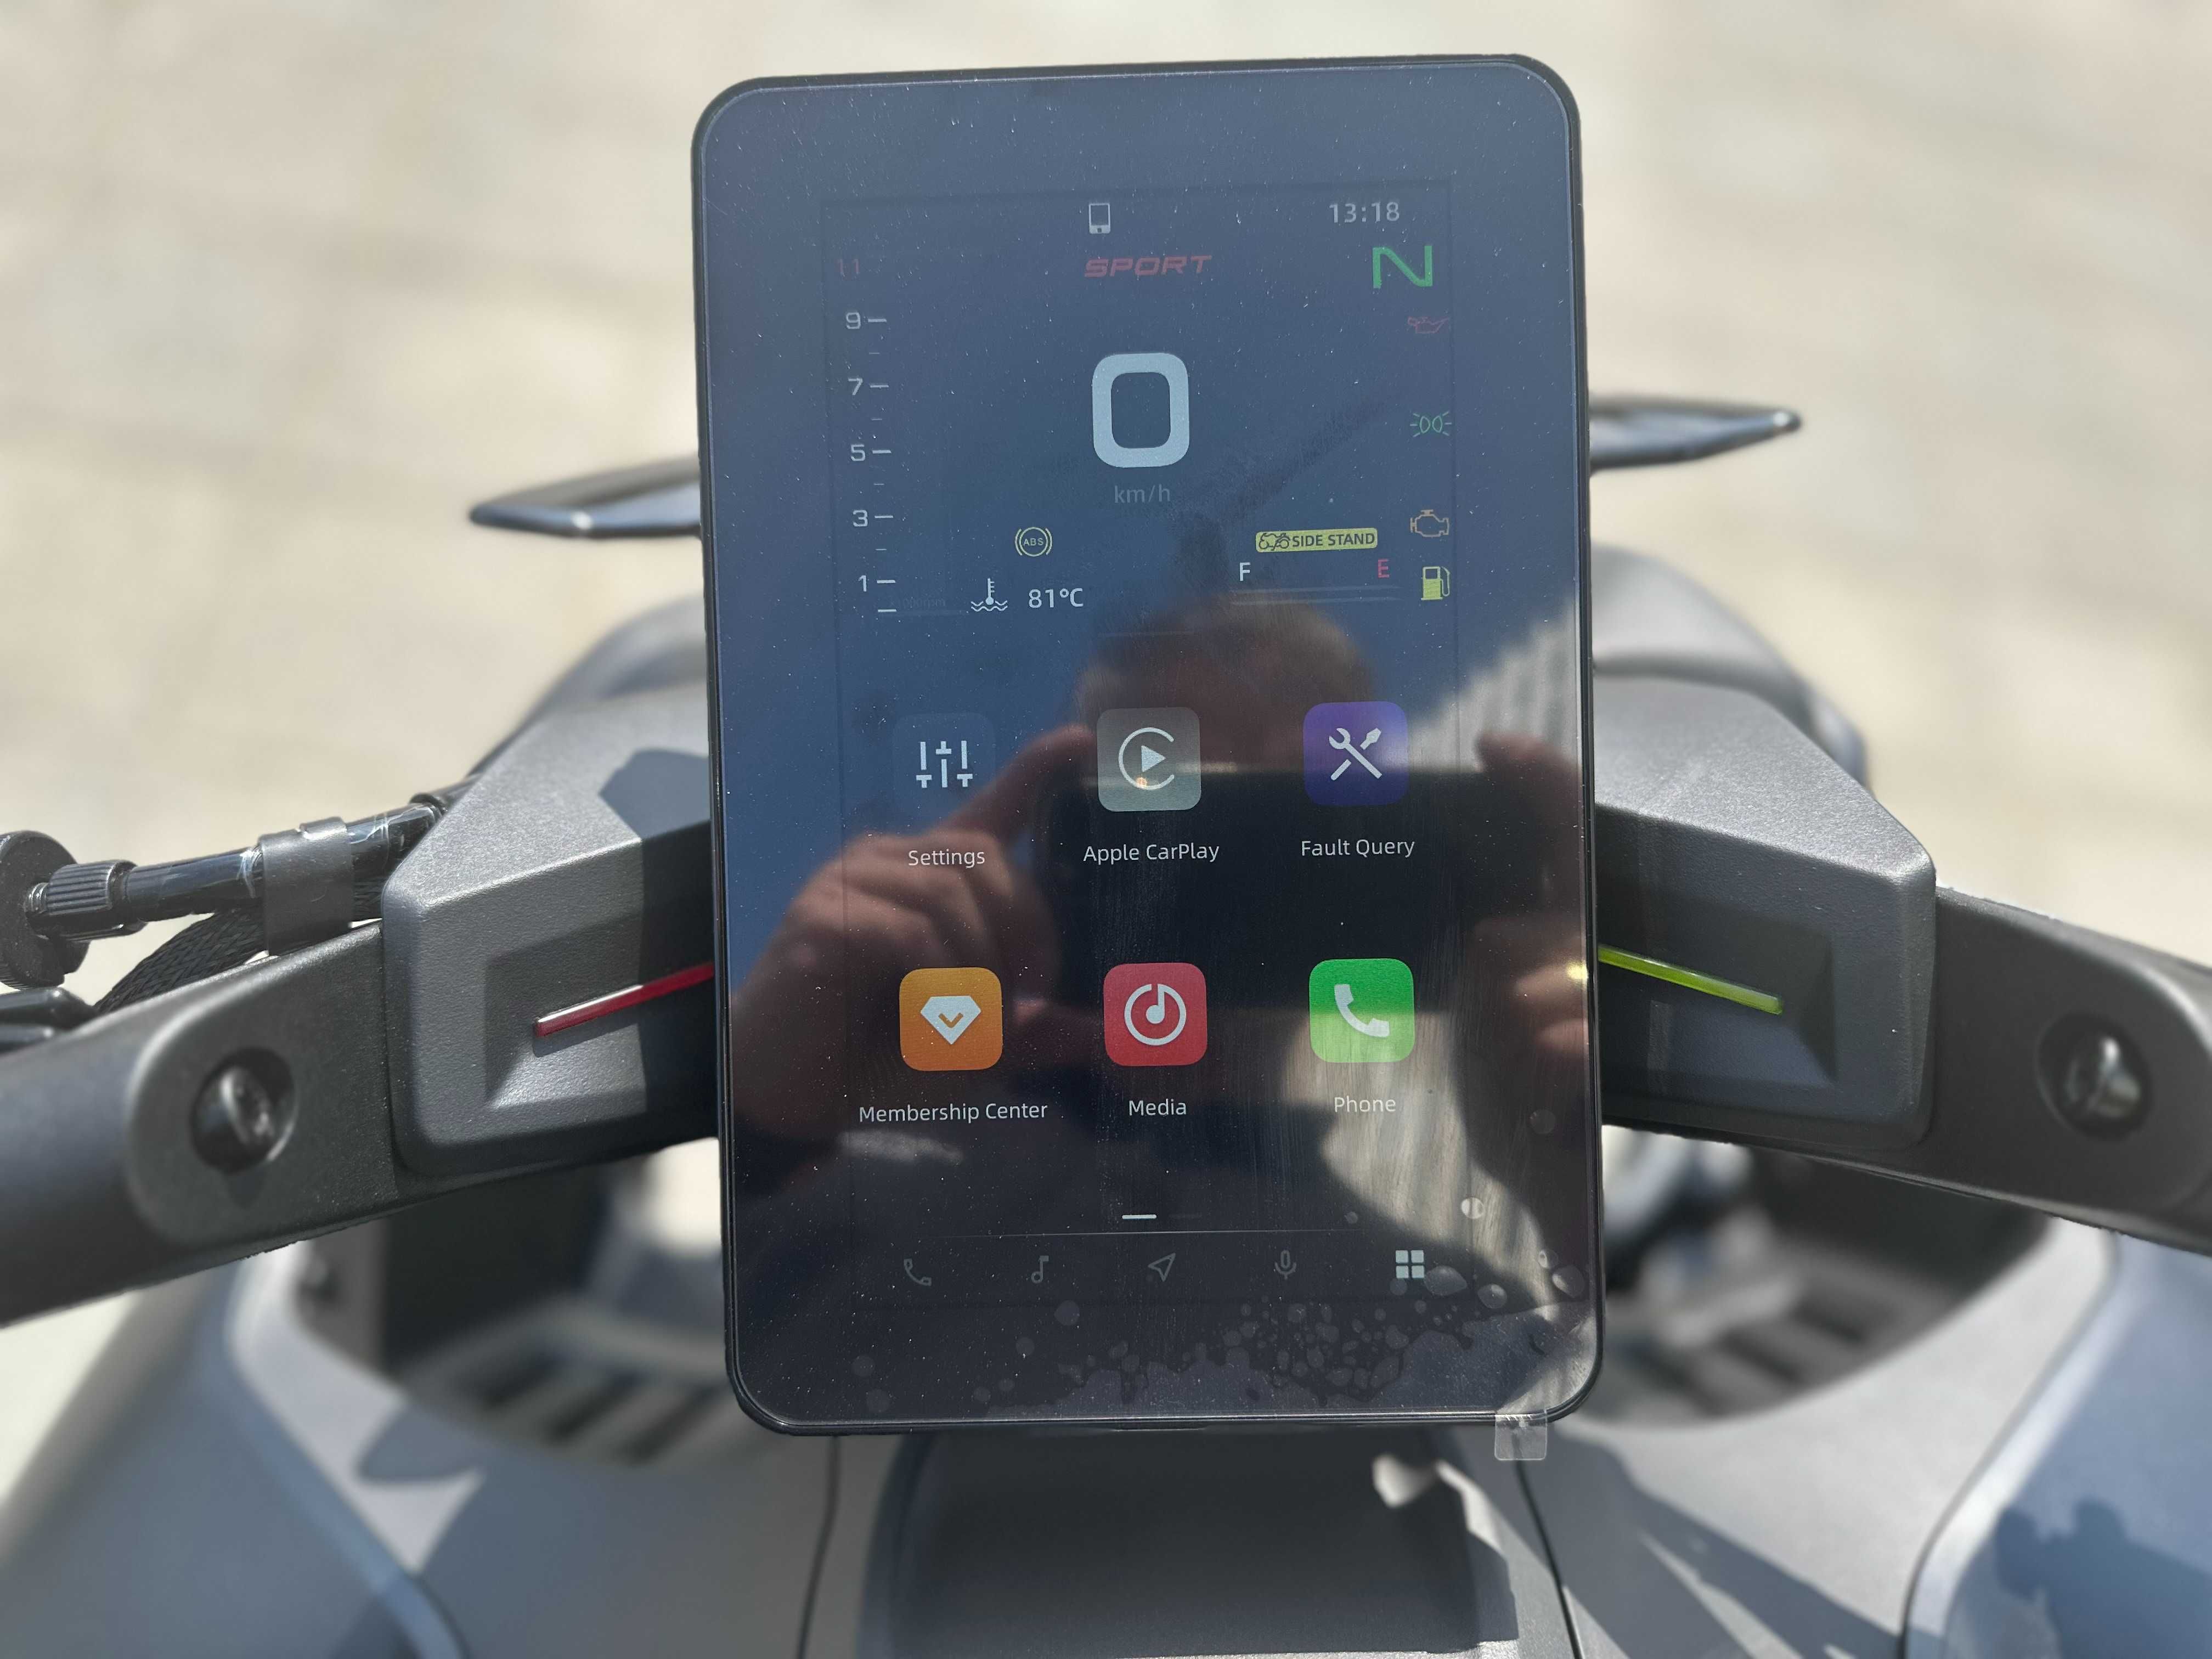 Motocykl CF Moto 800NK Advance Wyprzedaż Raty 0% /Leasing /Transport